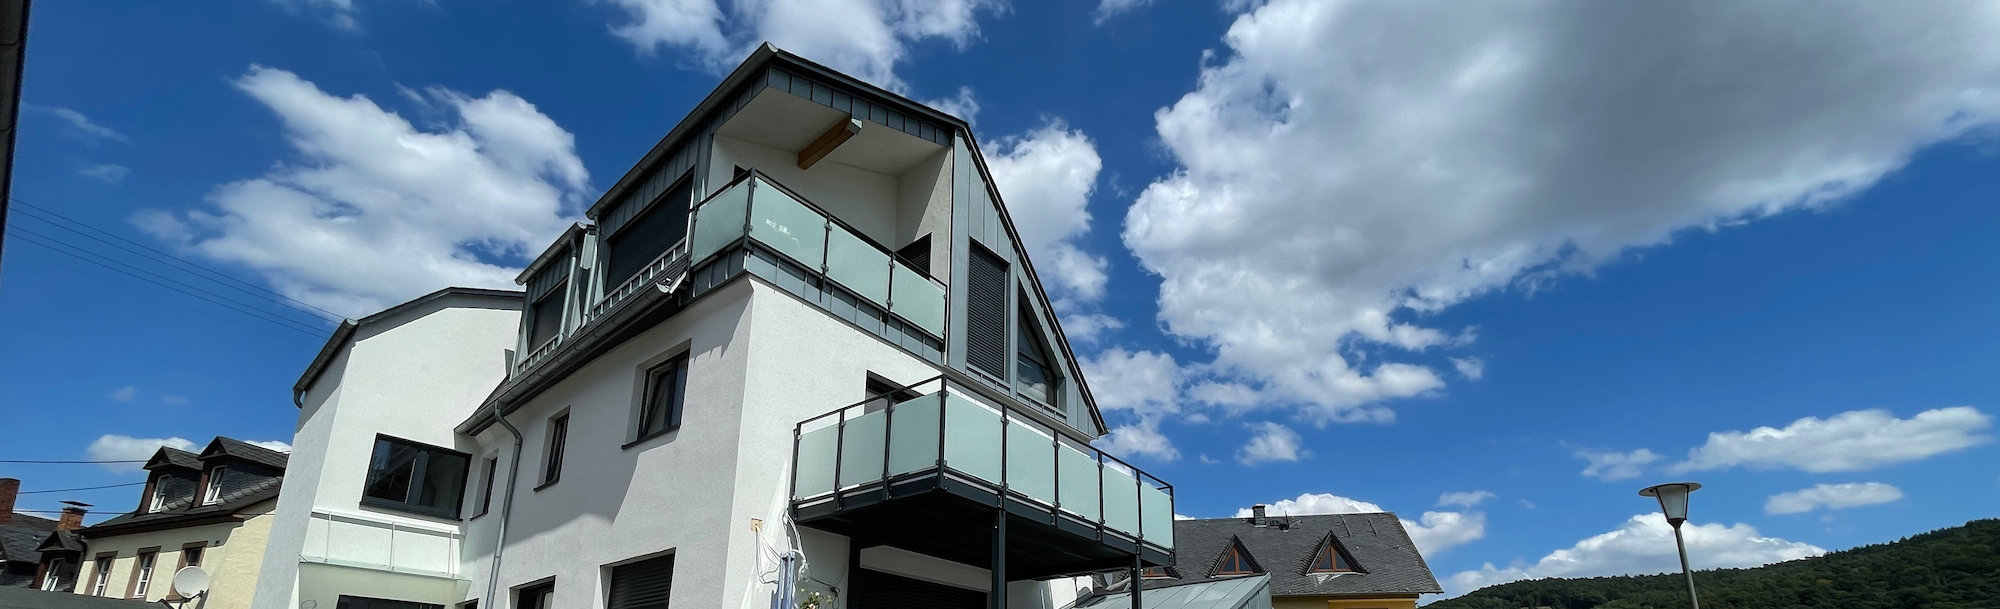 Tolle neuwertige Eigentumswohnung in Dreis bei Wittlich